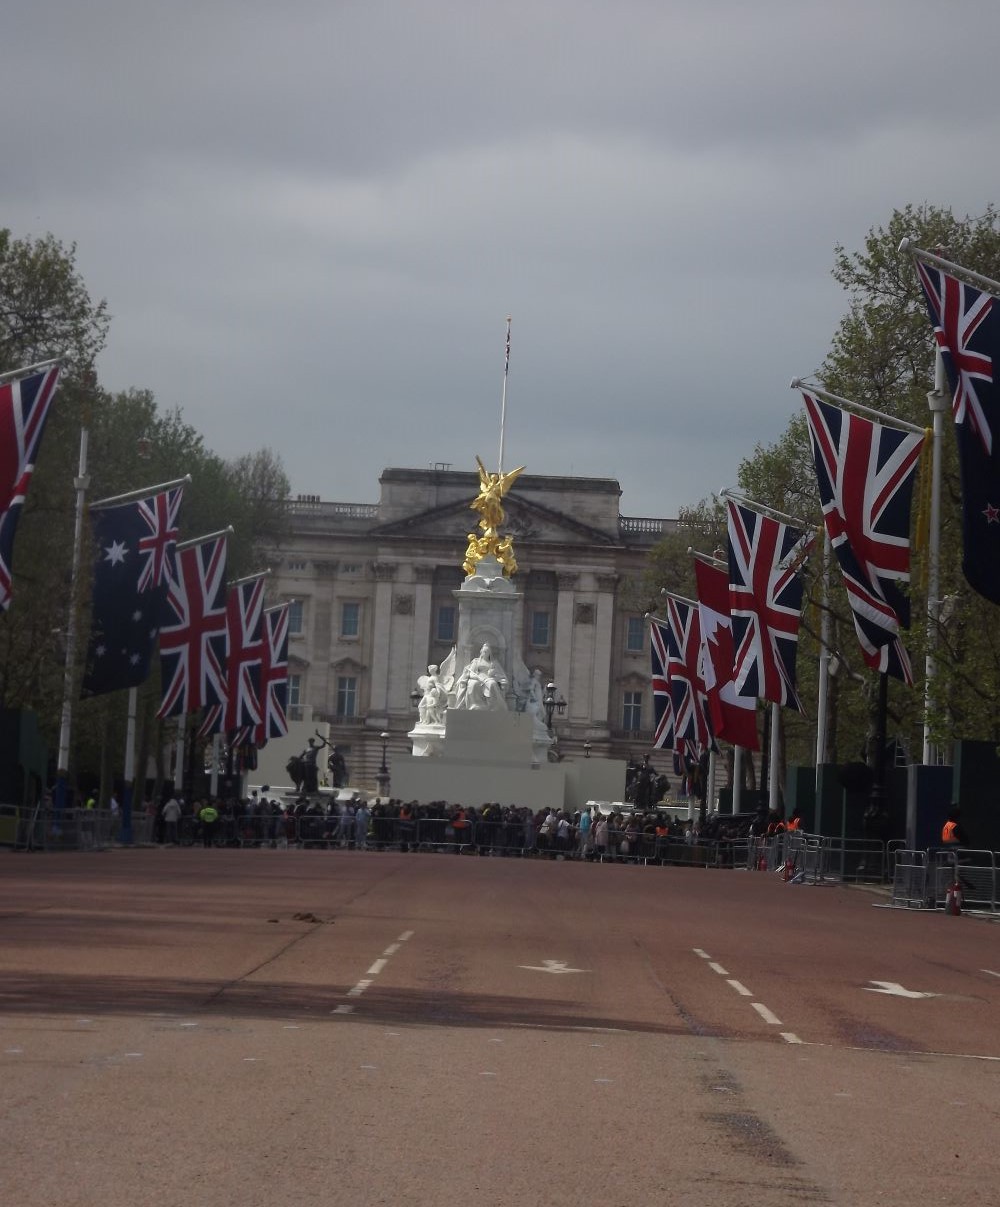 宮殿前の大通りザ・マルの沿道には、英国や英連邦国の国旗が掲げられた。ヴィクトリア女王記念碑の前にあるザ・マルは、道路を渡るだけに規制されていた